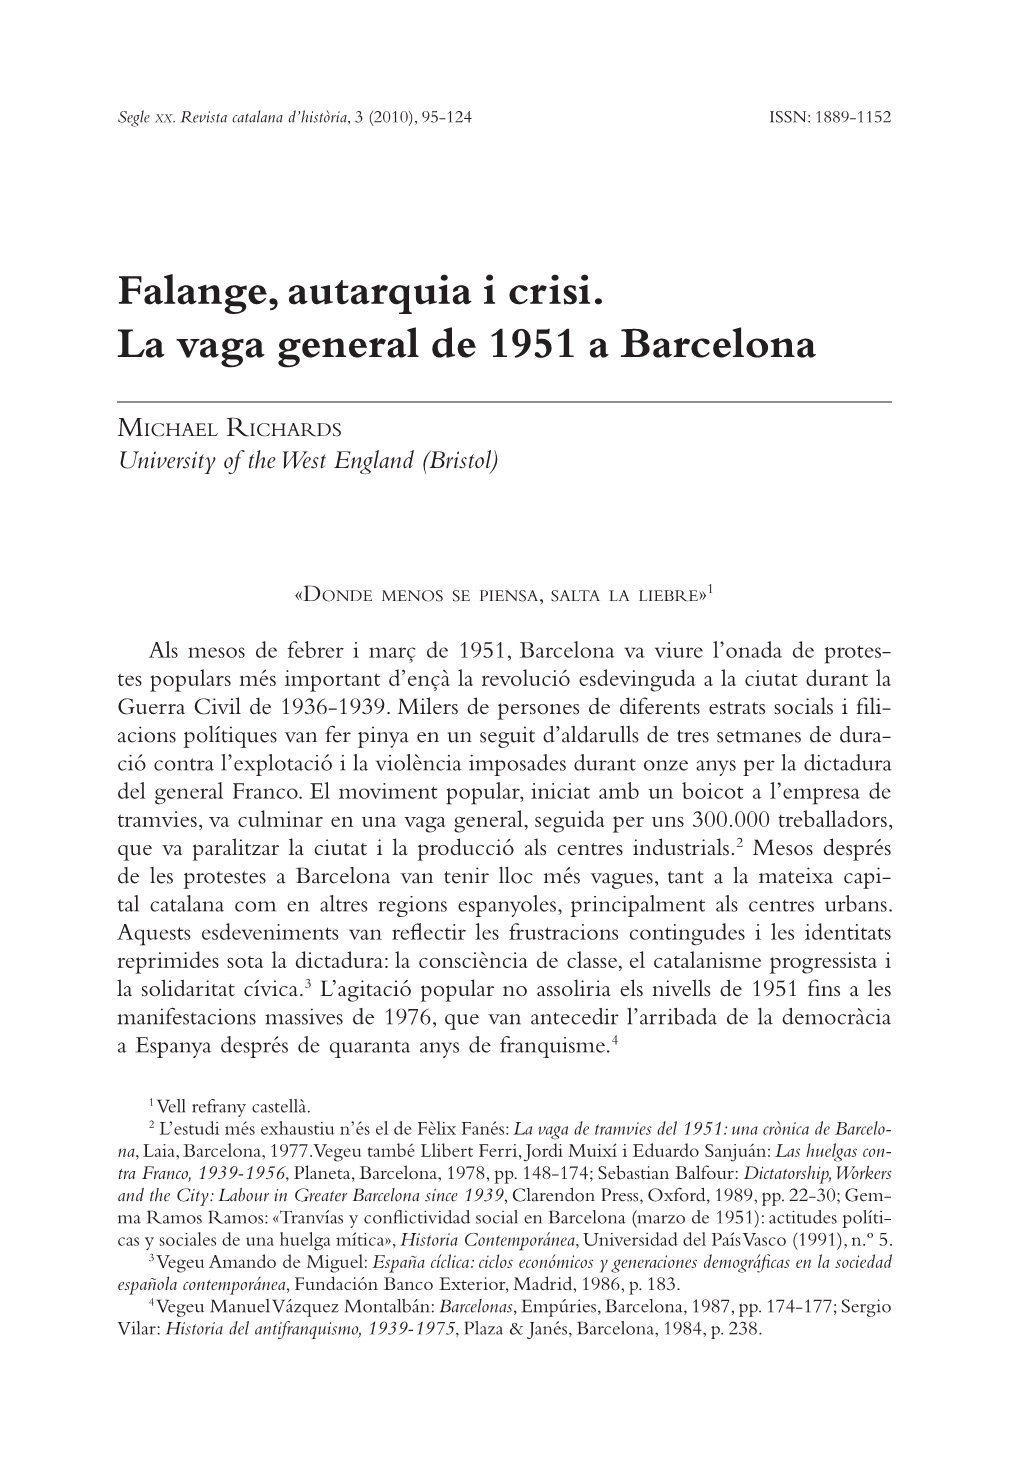 Falange, Autarquia I Crisi. La Vaga General De 1951 a Barcelona